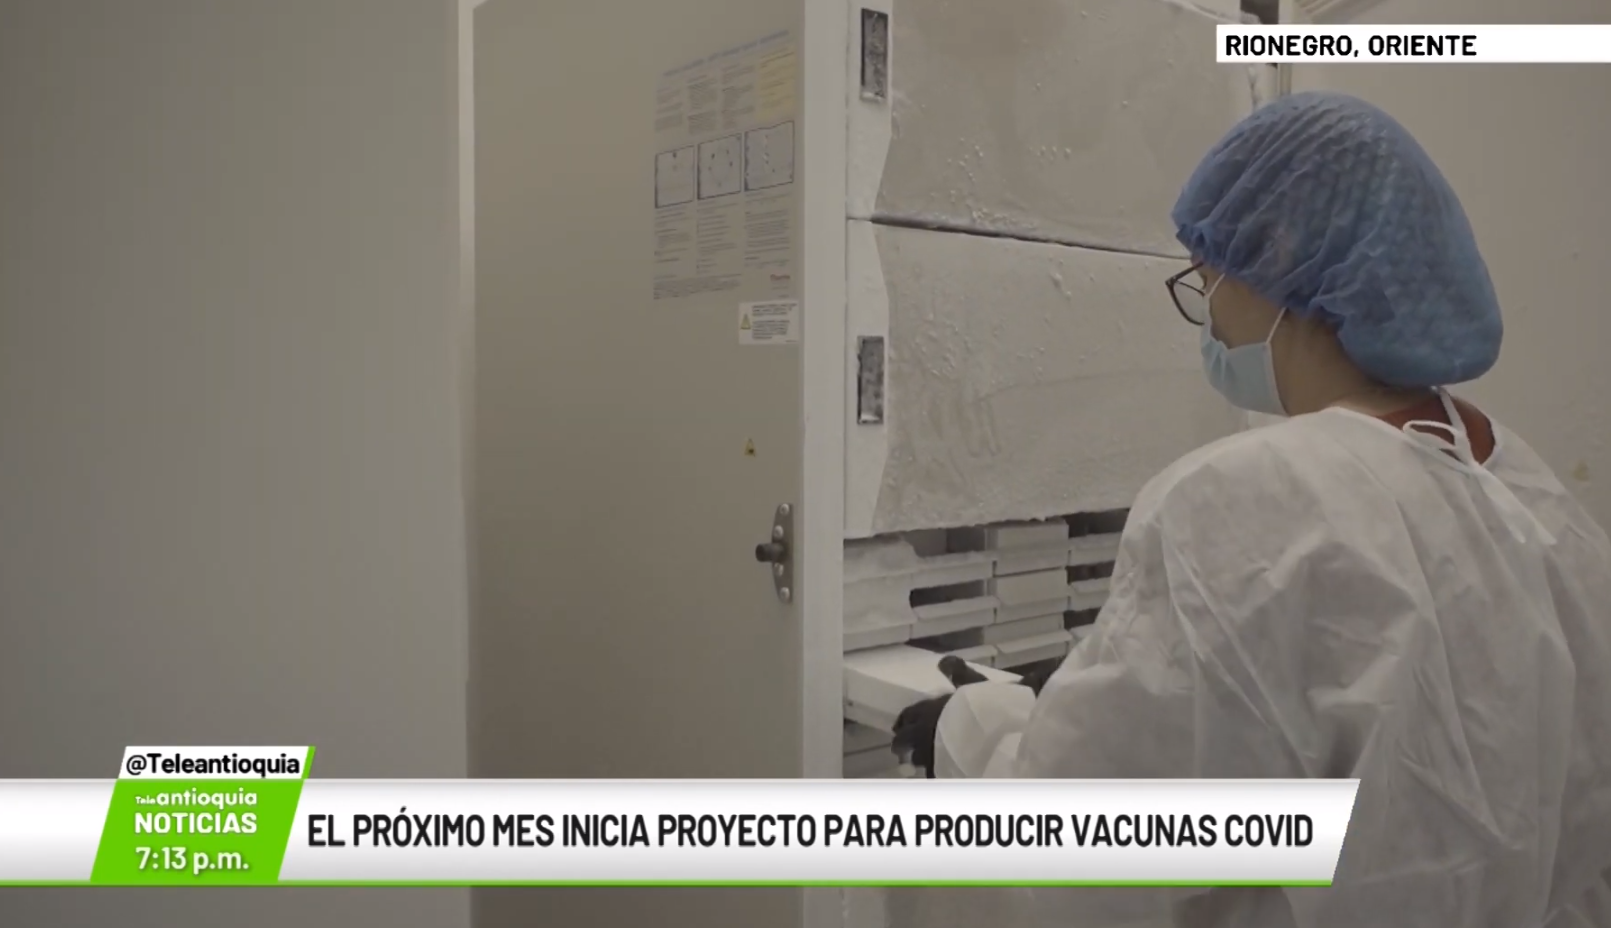 El próximo mes inicia proyecto para producir vacunas covid